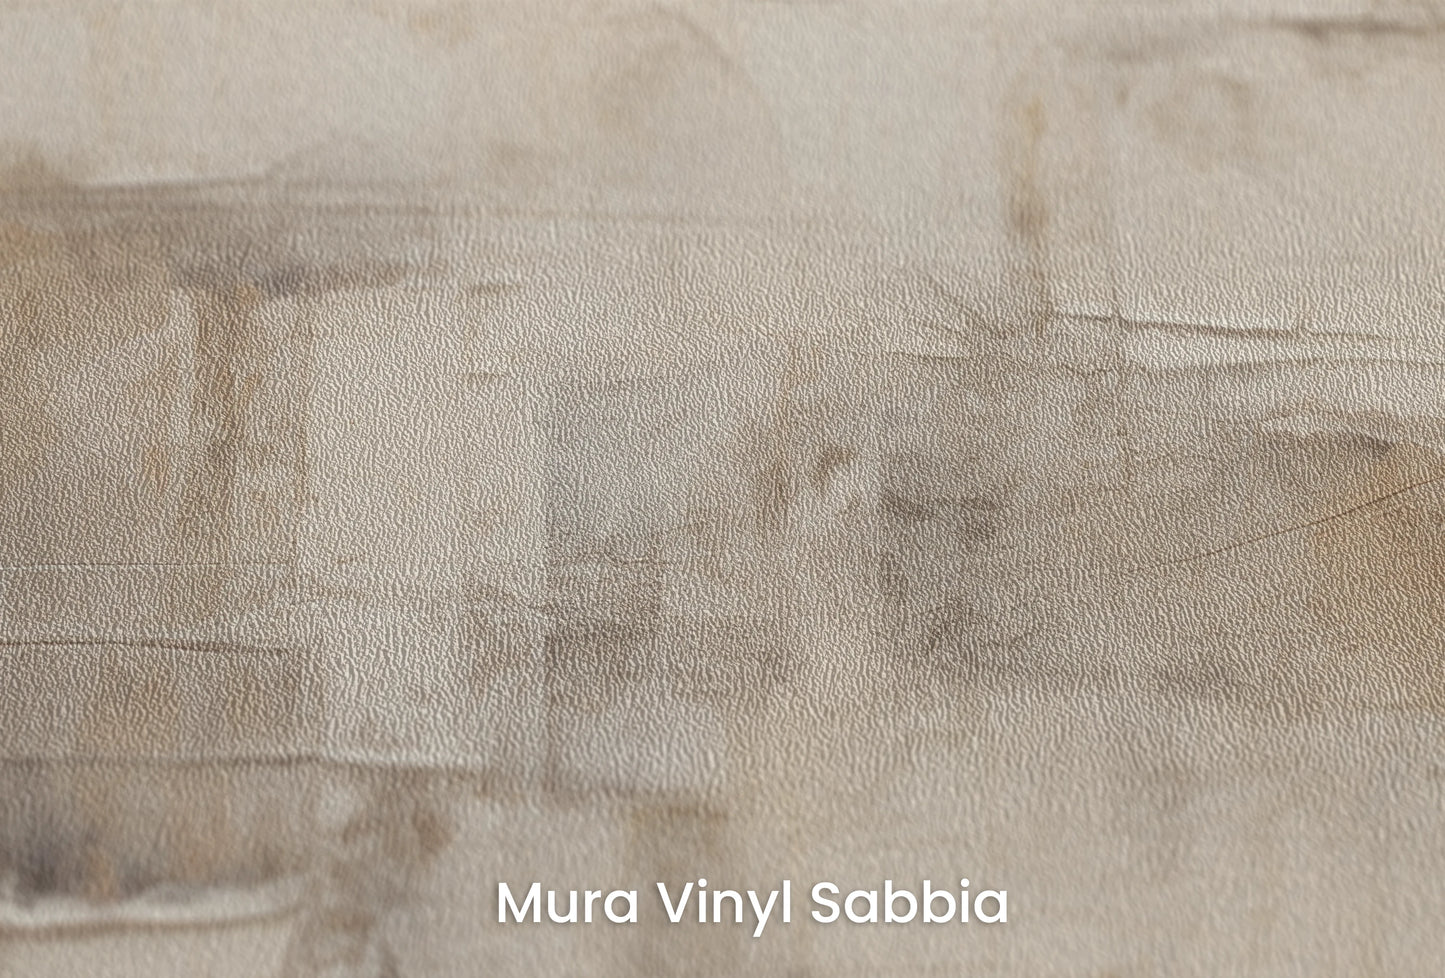 Zbliżenie na artystyczną fototapetę o nazwie Monochrome Palette na podłożu Mura Vinyl Sabbia struktura grubego ziarna piasku.